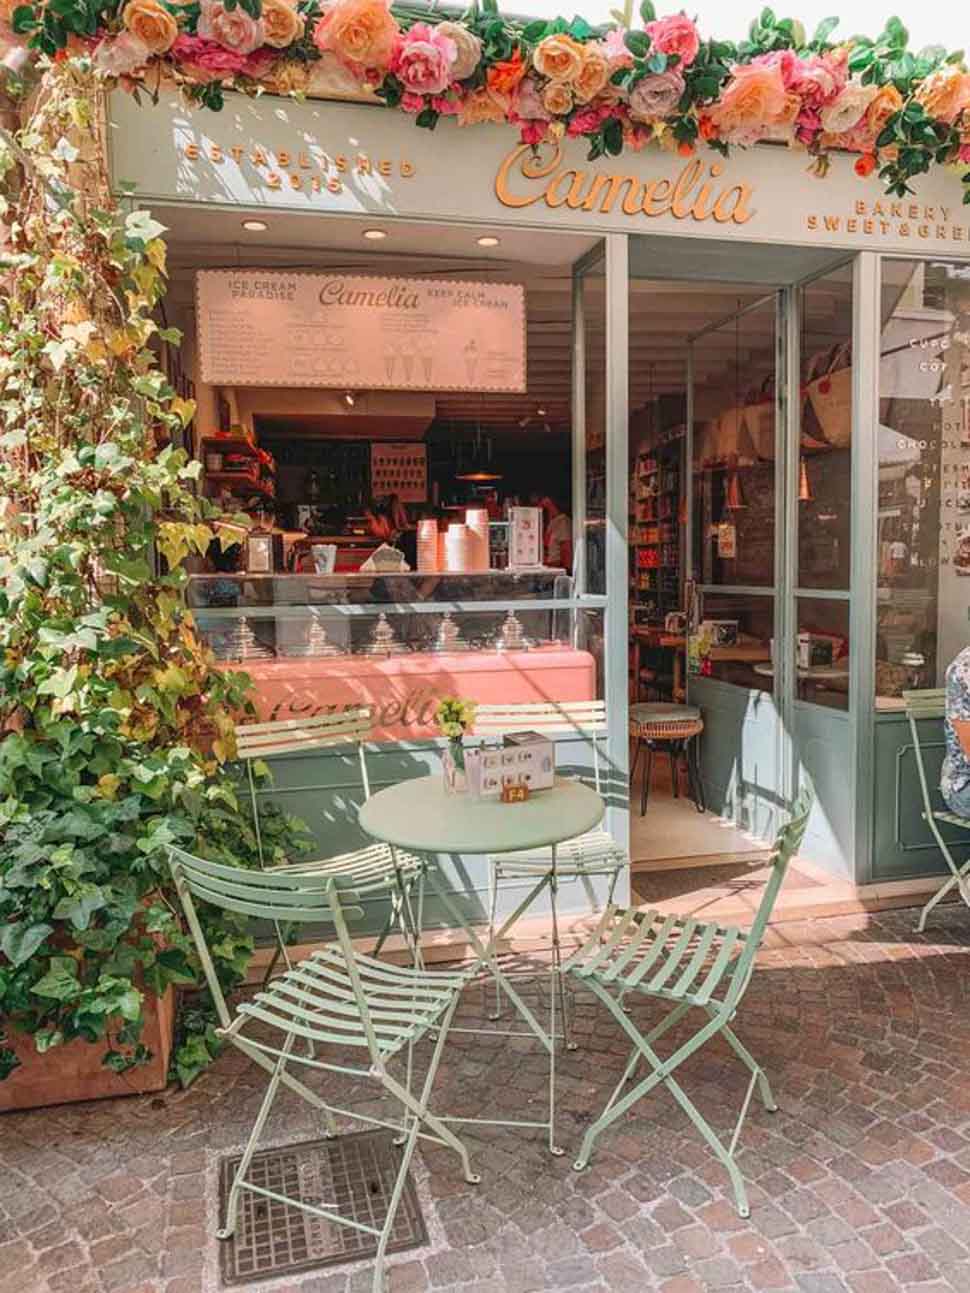 Mẫu cửa hàng bánh ngọt nhỏ xinh được thiết kế theo phong cách vintage vô cùng ấm áp